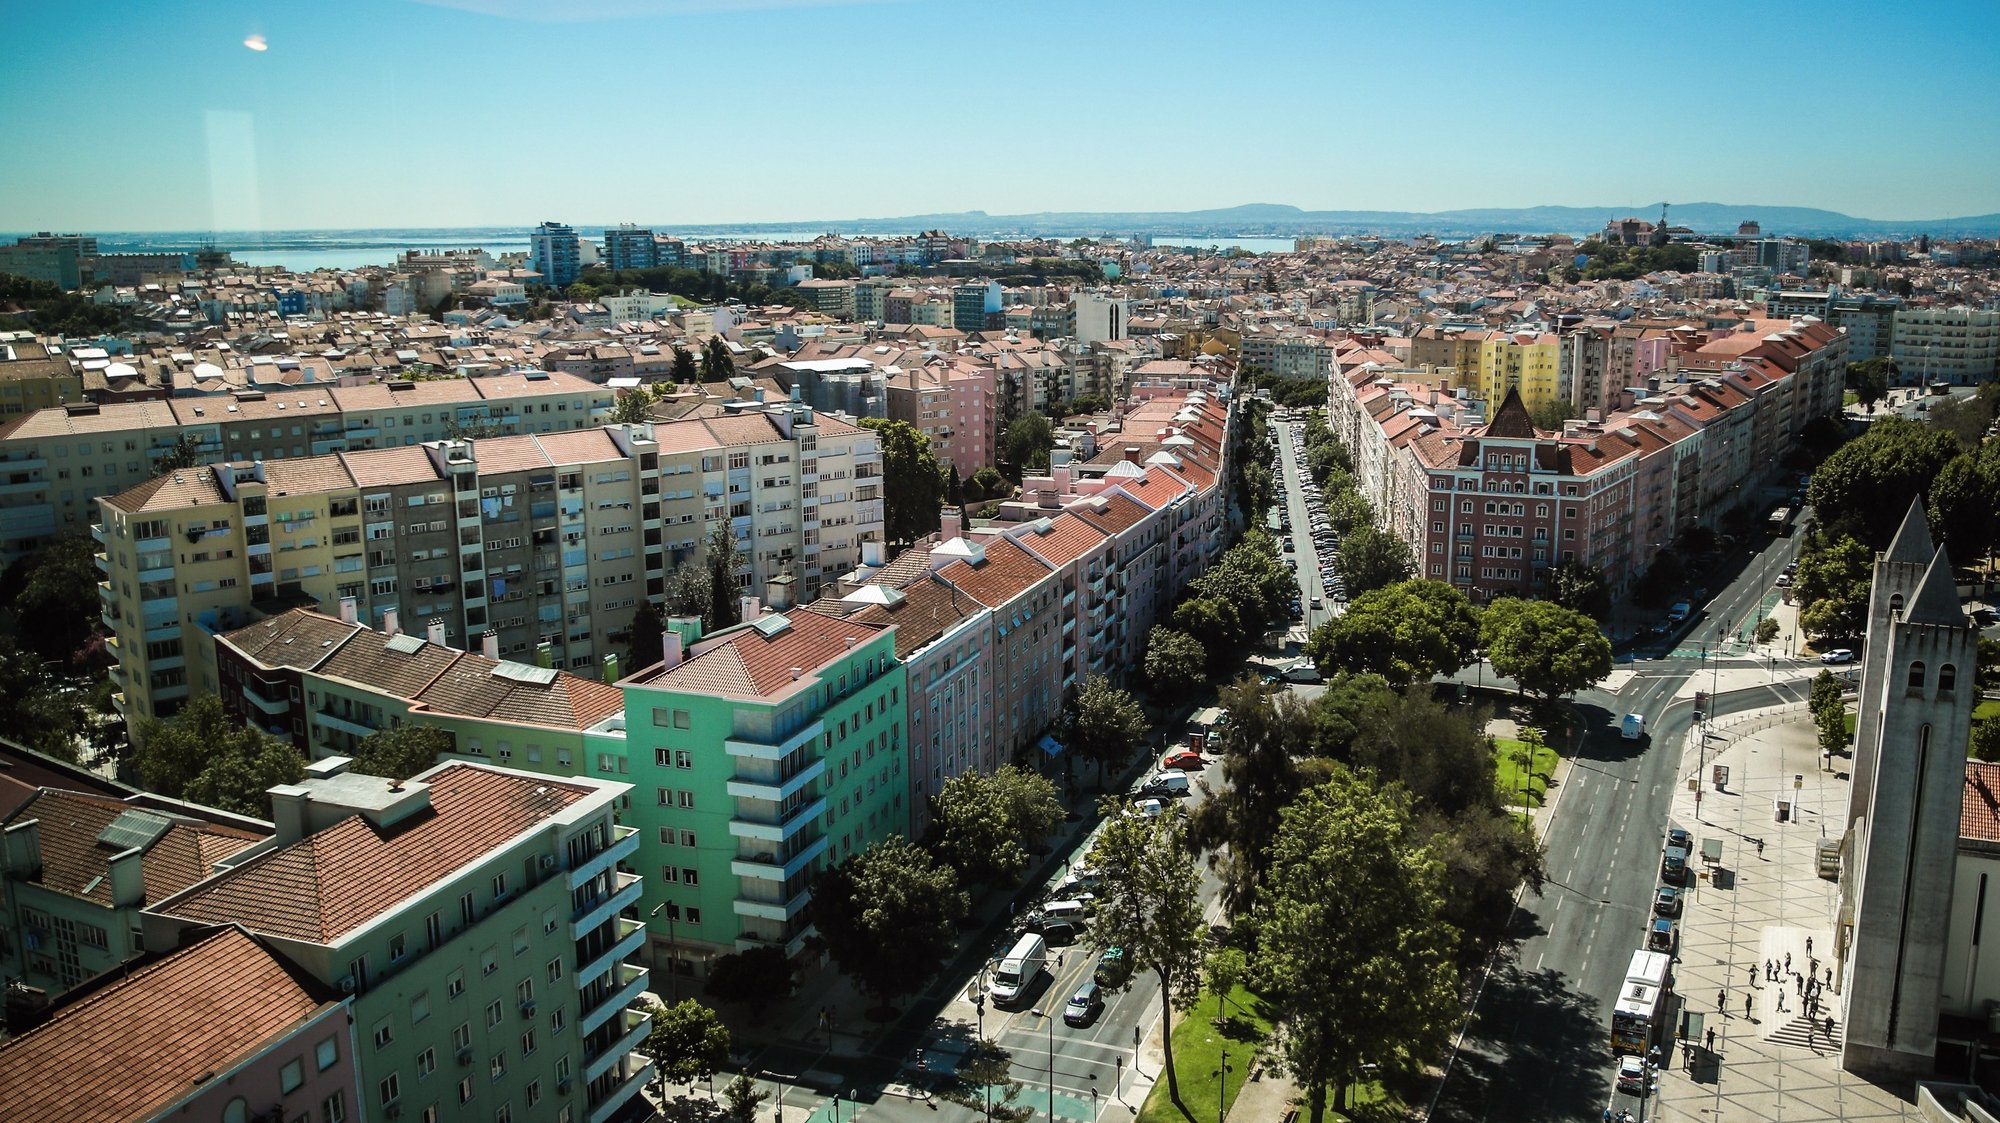 Vista da cidade de Lisboa